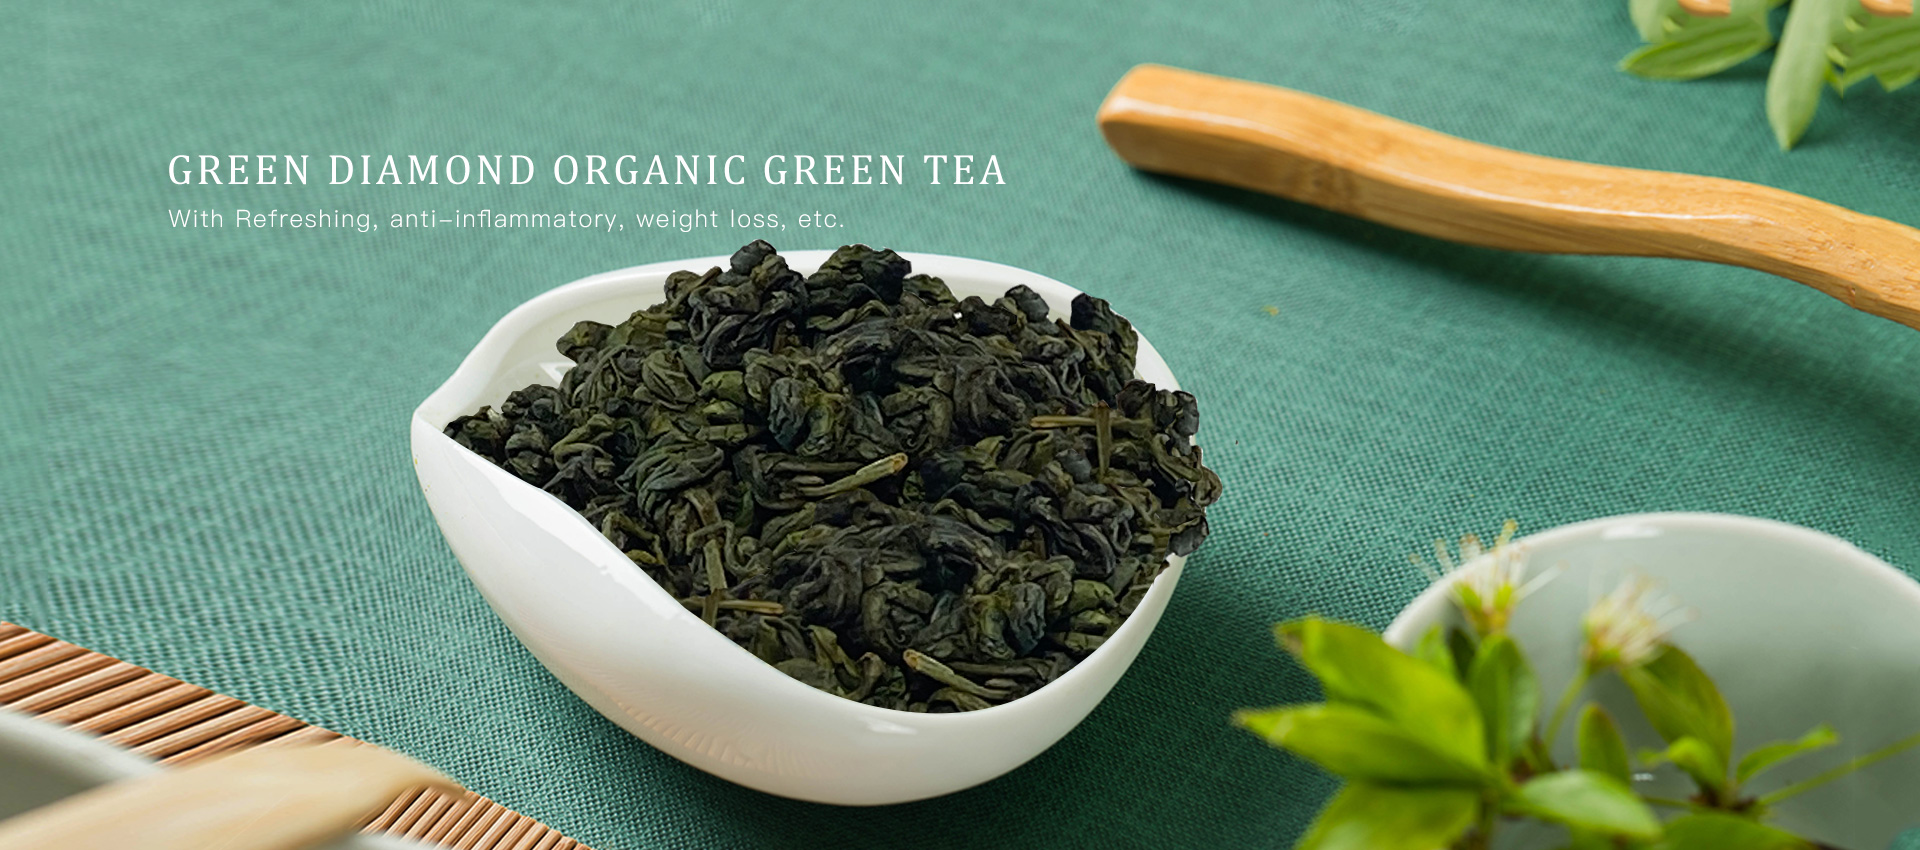 थोक चीनी हीरा जैविक हरी चाय